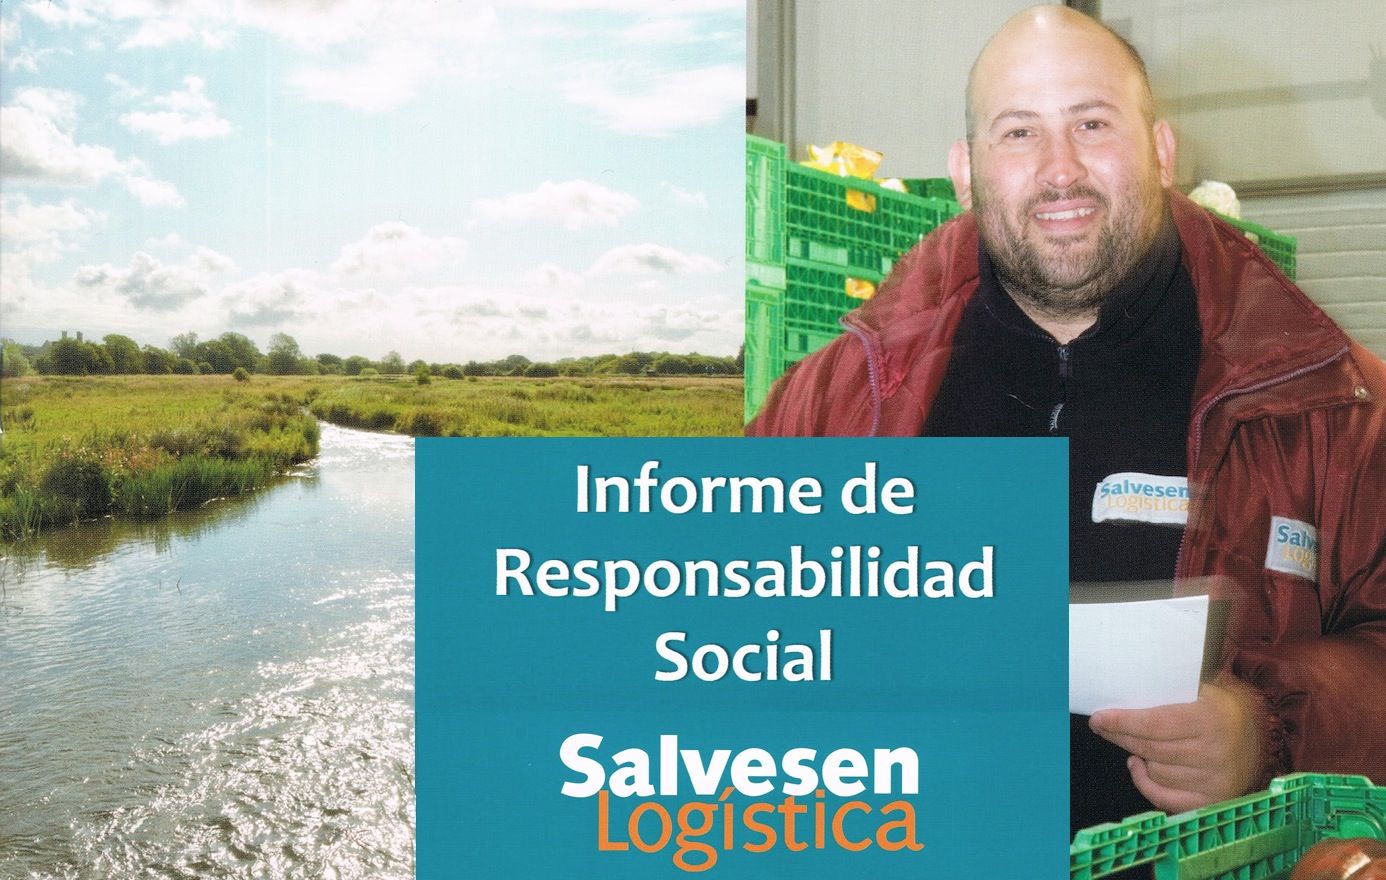 Informe de Responsabilidad Social Corporativa de Cristian Salvesen.